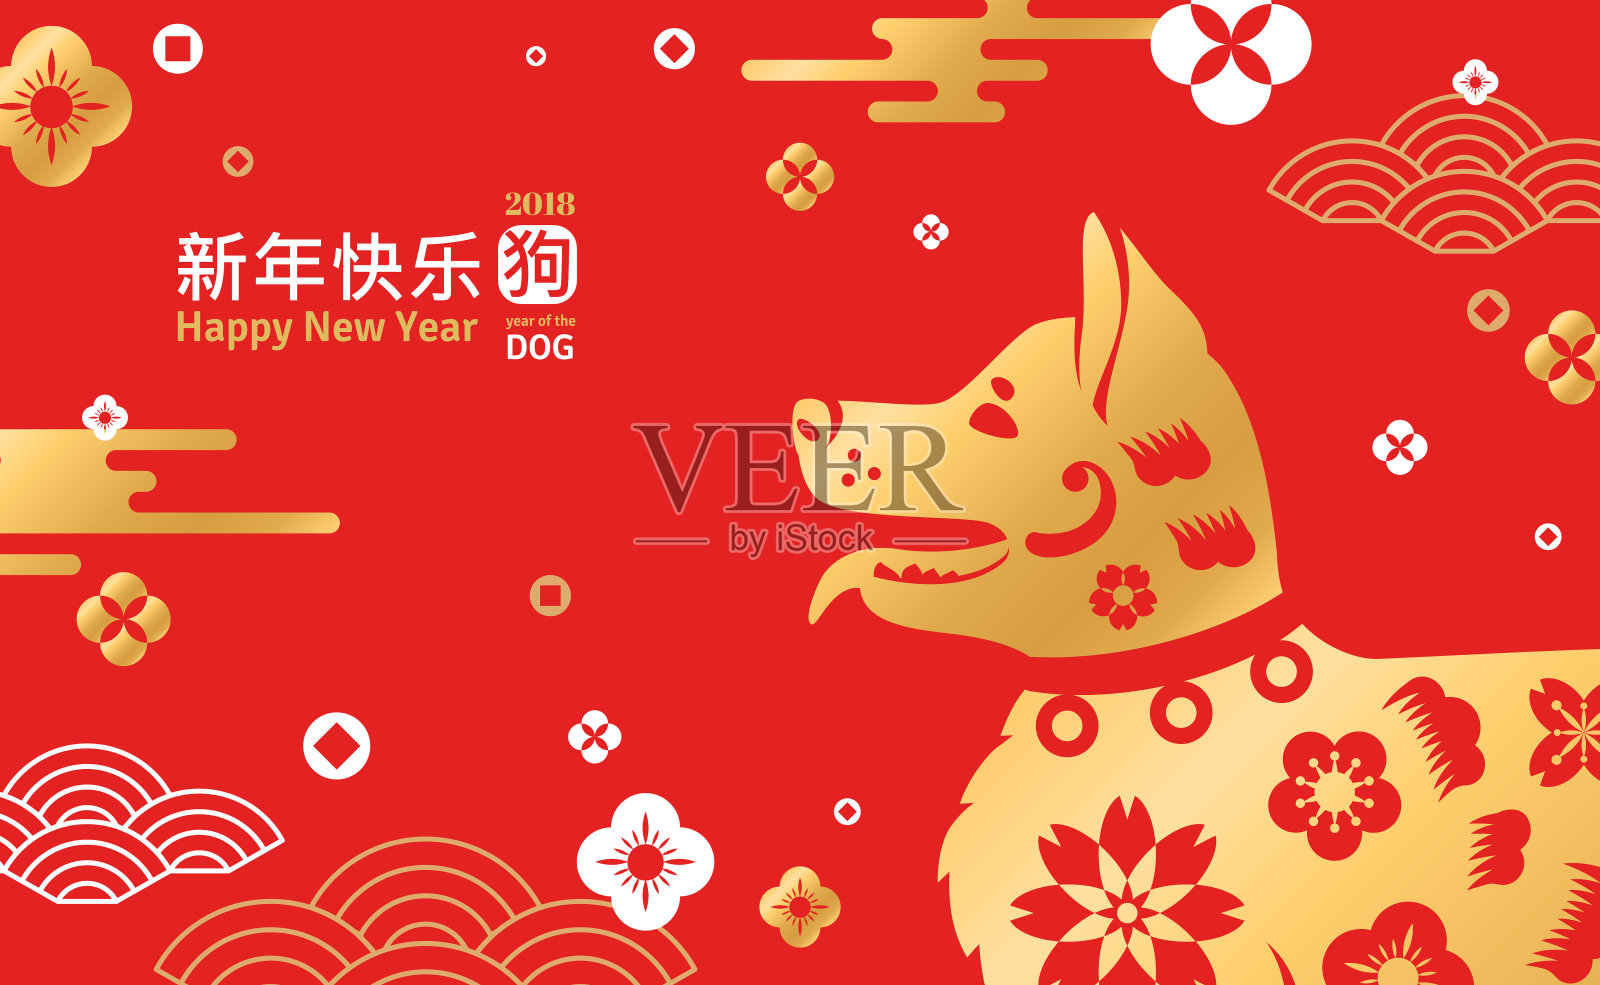 中国新年贺卡与狗设计模板素材